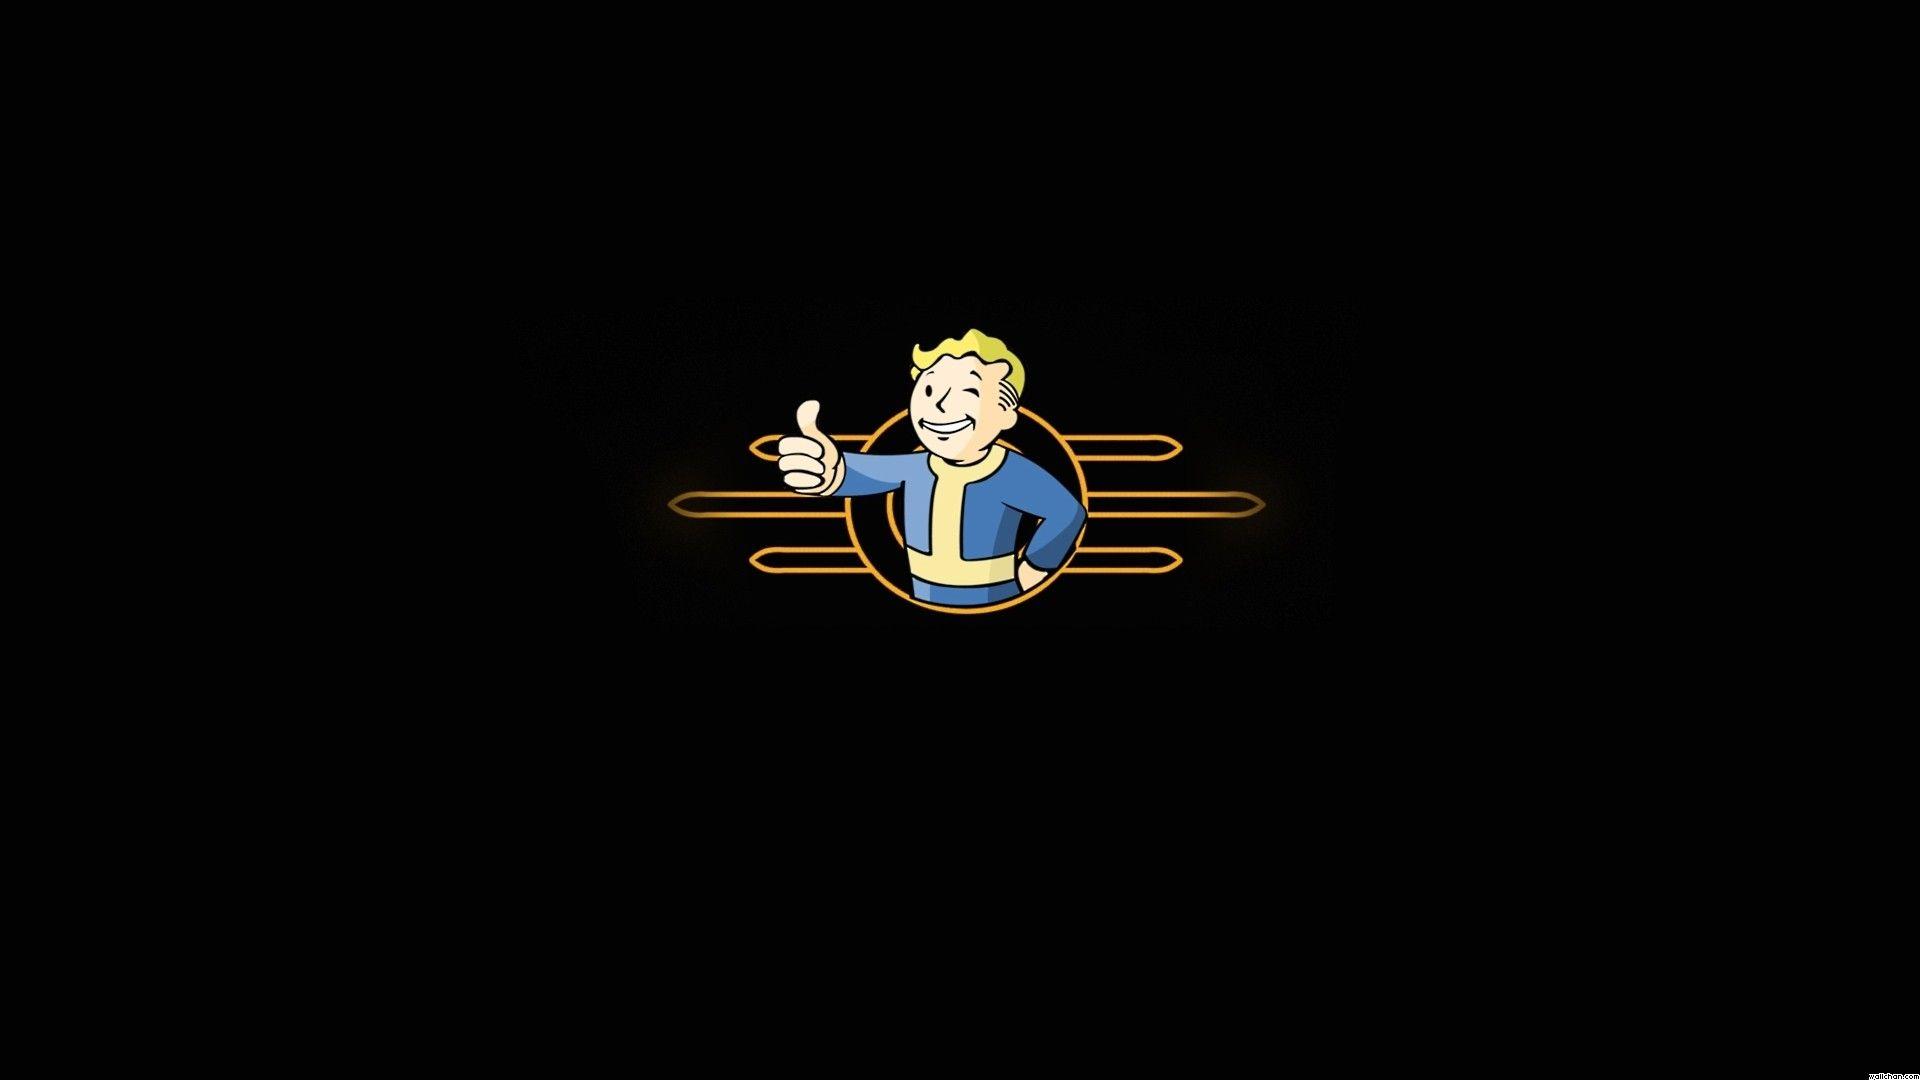 Wallpaper, logo, cartoon, Fallout, Vault Boy, screenshot, 1920x1080